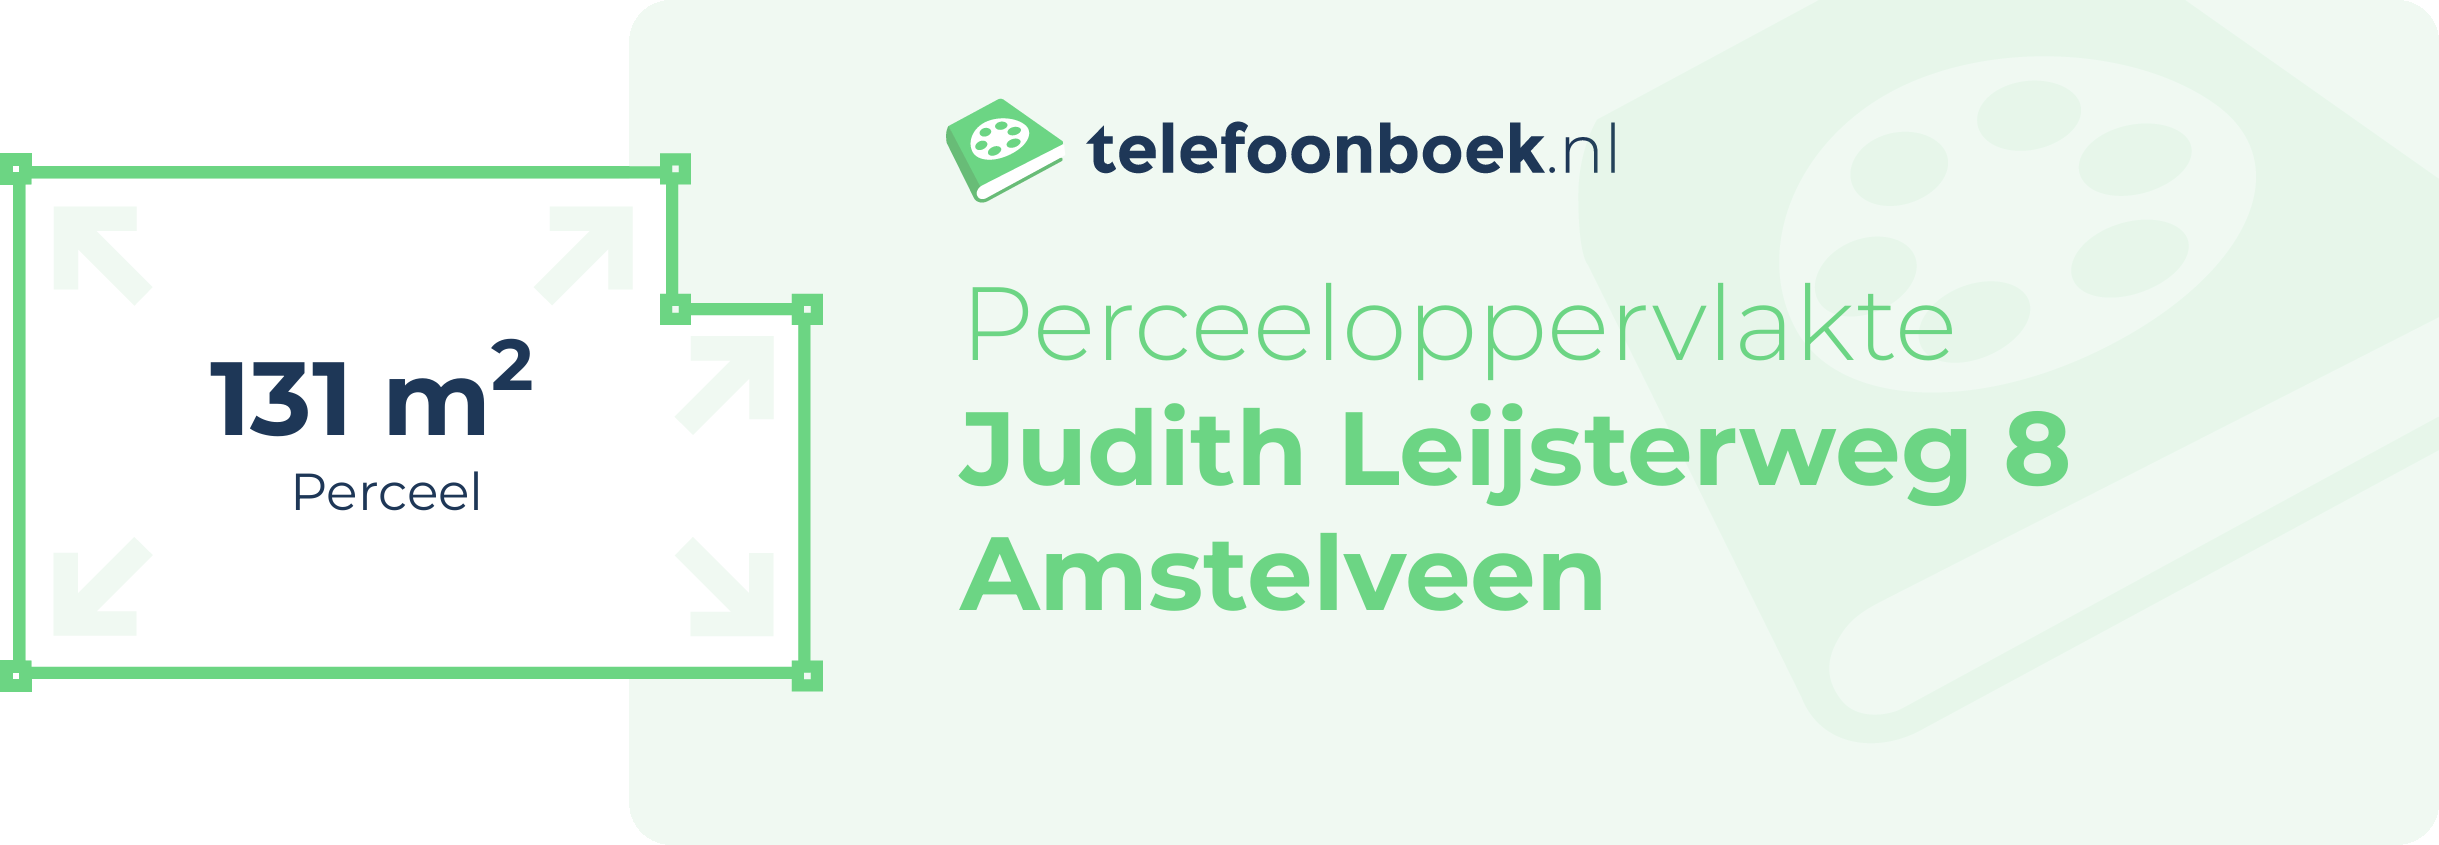 Perceeloppervlakte Judith Leijsterweg 8 Amstelveen